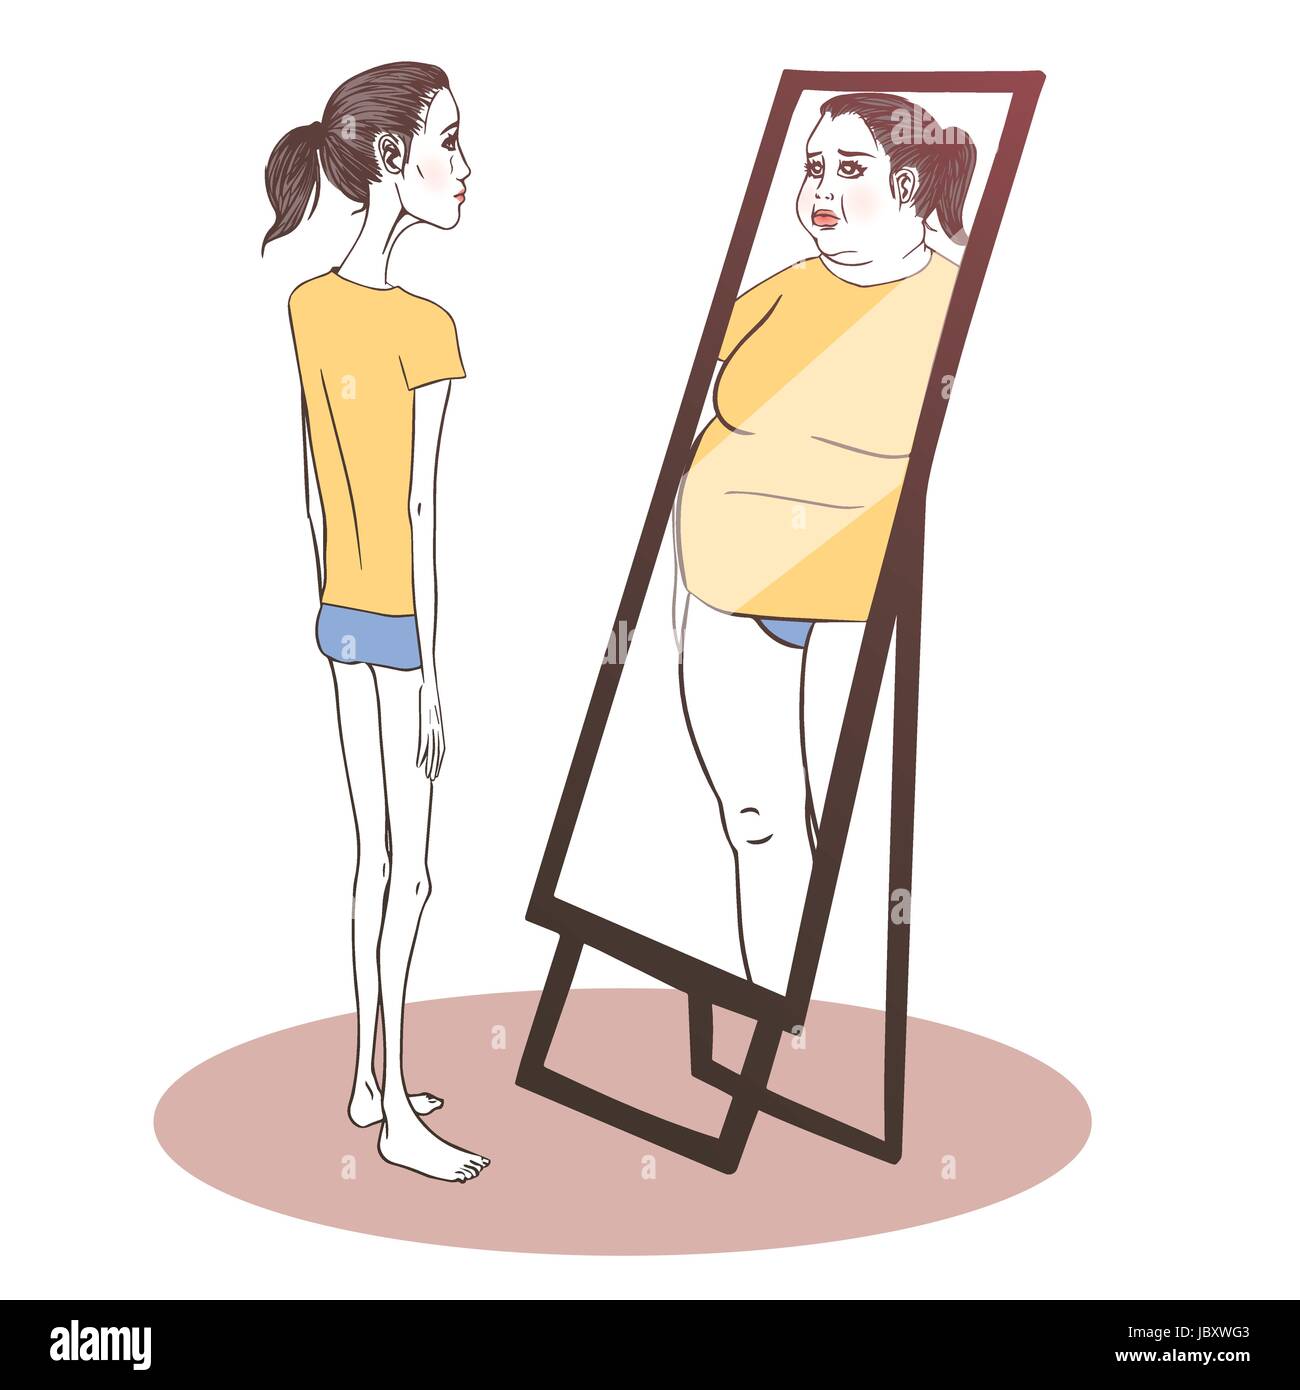 Junge Frau leidet unter Magersucht im Spiegel zu betrachten Stock Vektor